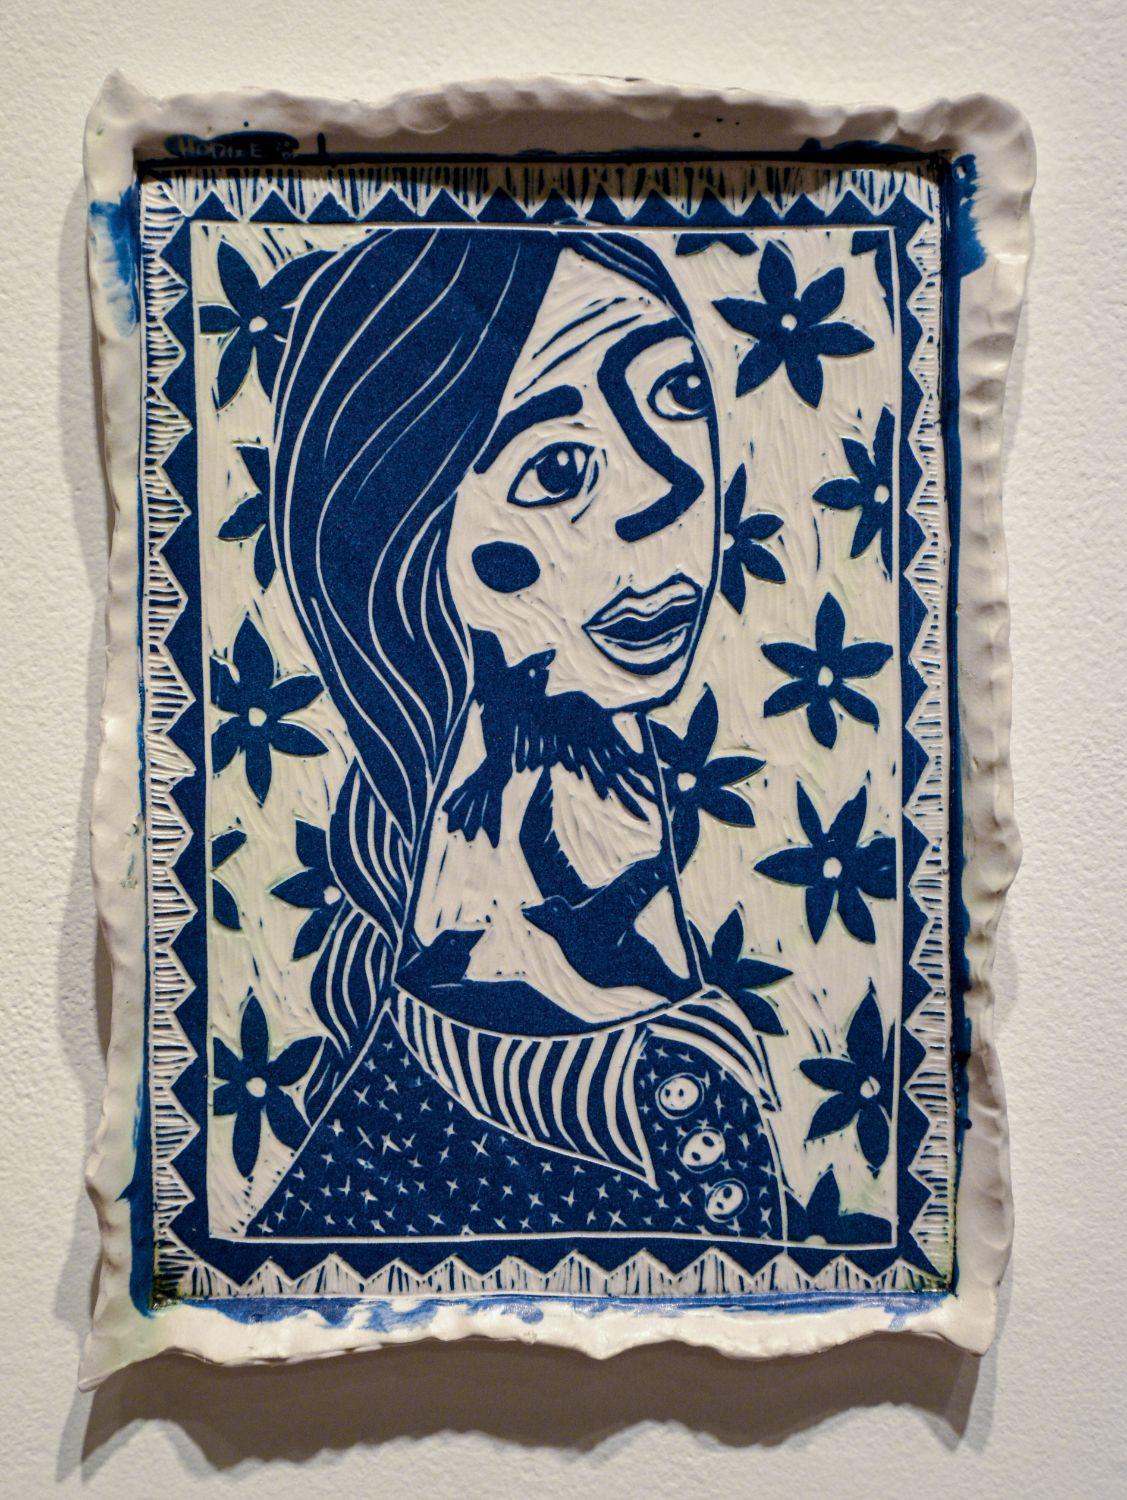 RISK, 2019 par Alex Hodge
Porcelaine sculptée
11.5 H in x 8.5 W in x 0.5 D in
Unique en son genre

Ses assiettes poétiques en porcelaine examinent et réimaginent l'histoire de l'art d'une manière qui valorise les femmes, non seulement dans leur